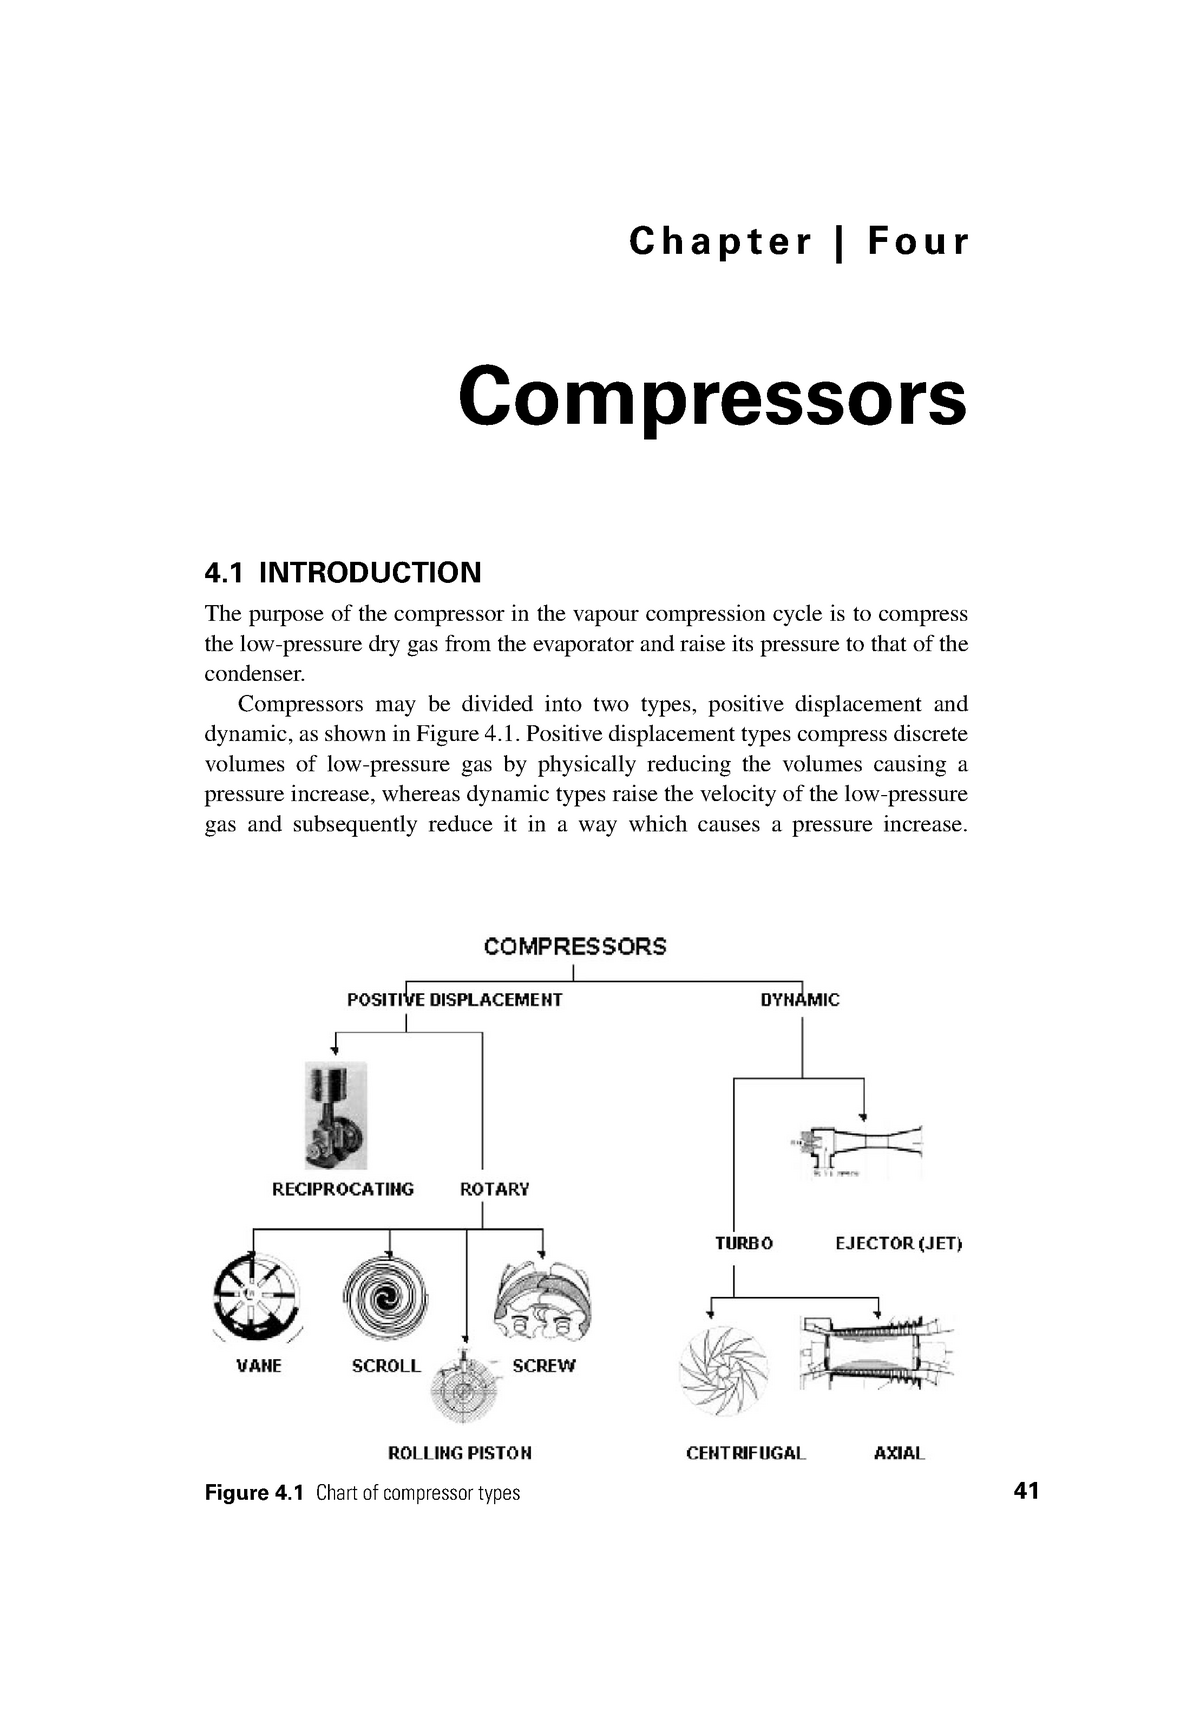 Vilter Compressor Capacity Chart